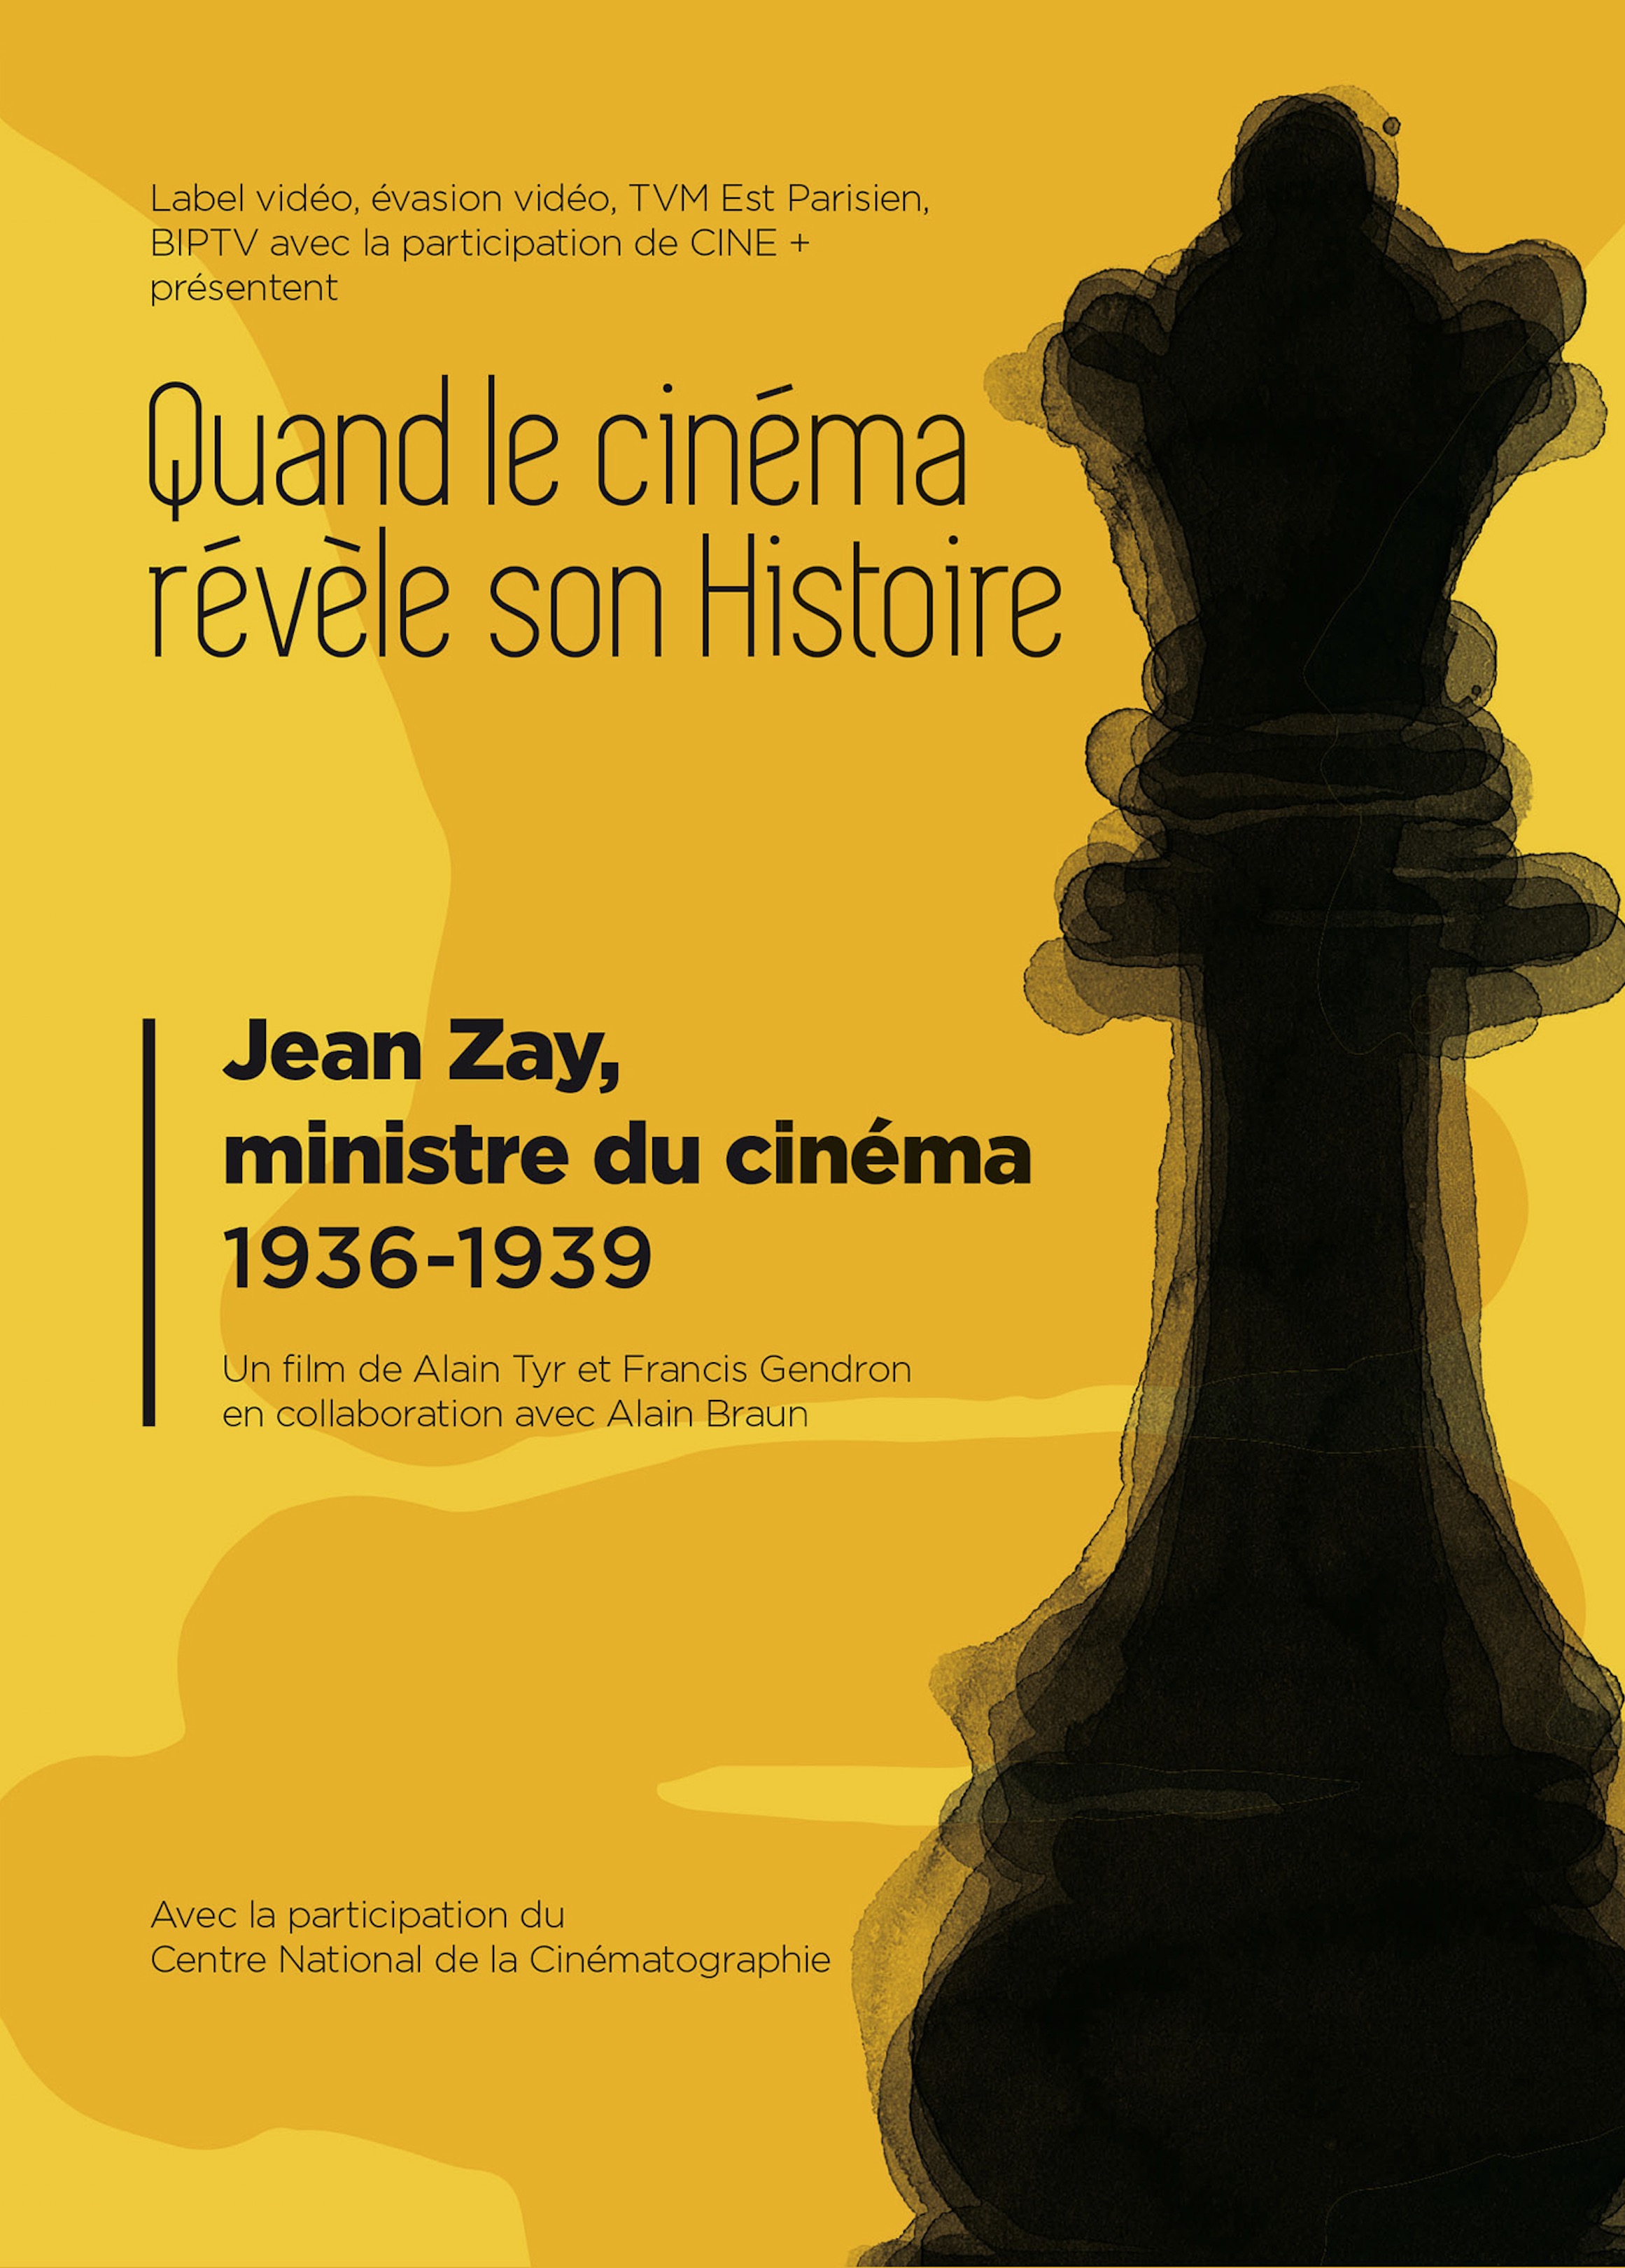 Jean Zay, ministre du cinéma